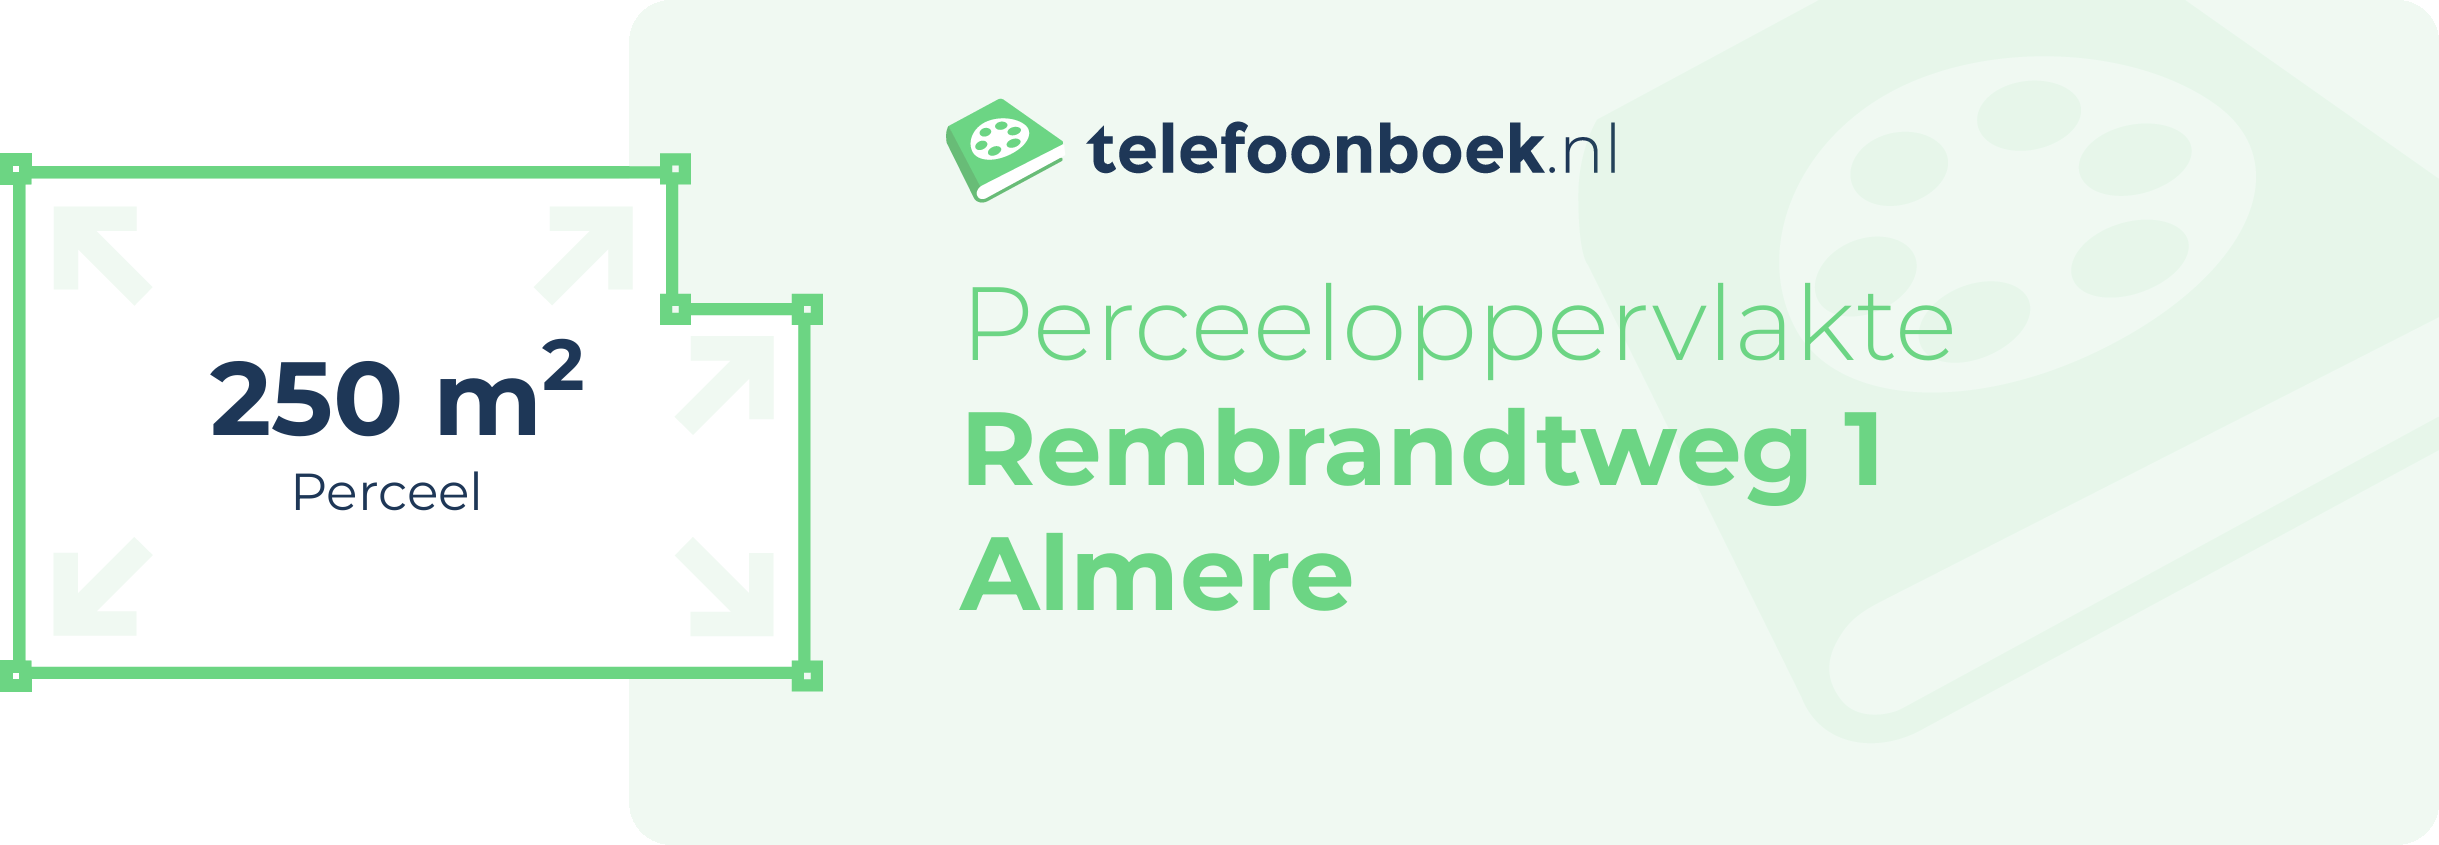 Perceeloppervlakte Rembrandtweg 1 Almere